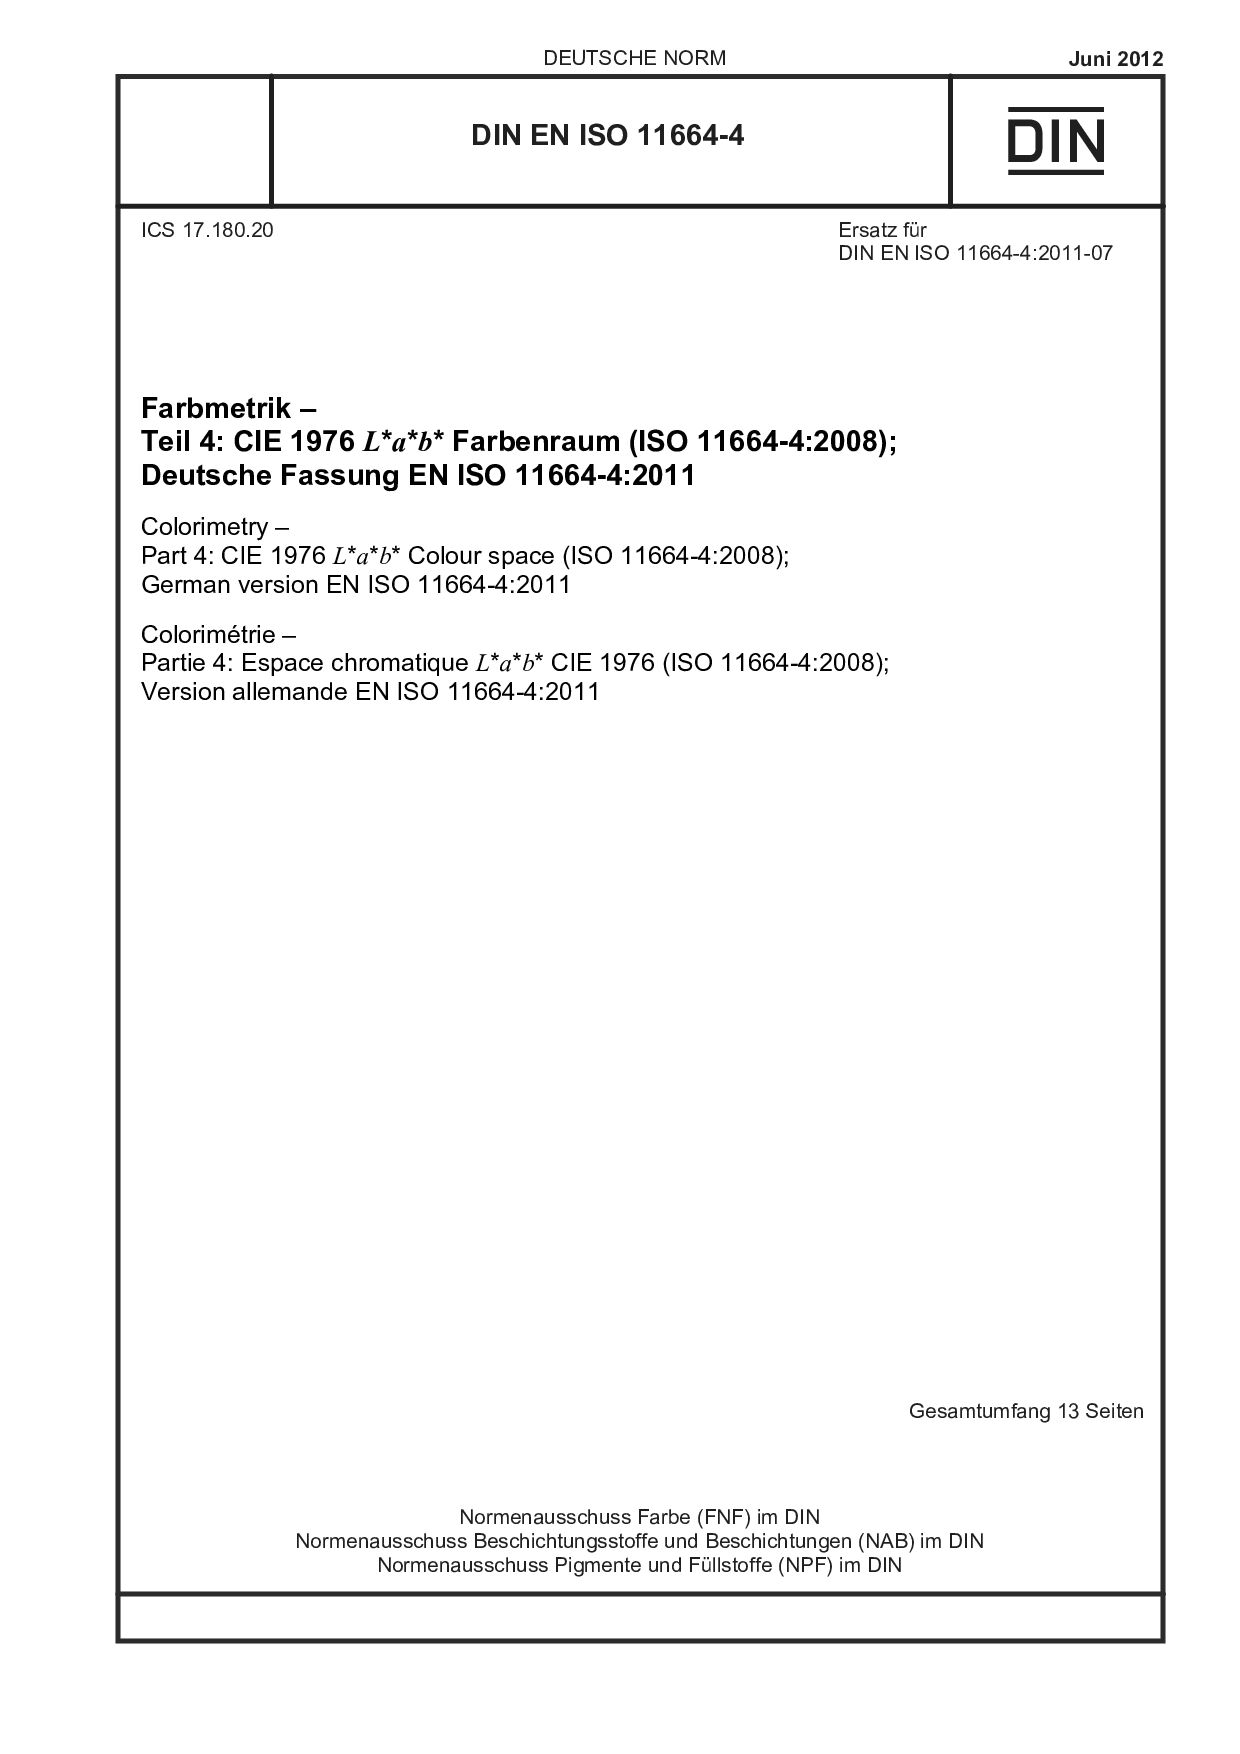 DIN EN ISO 11664-4:2012